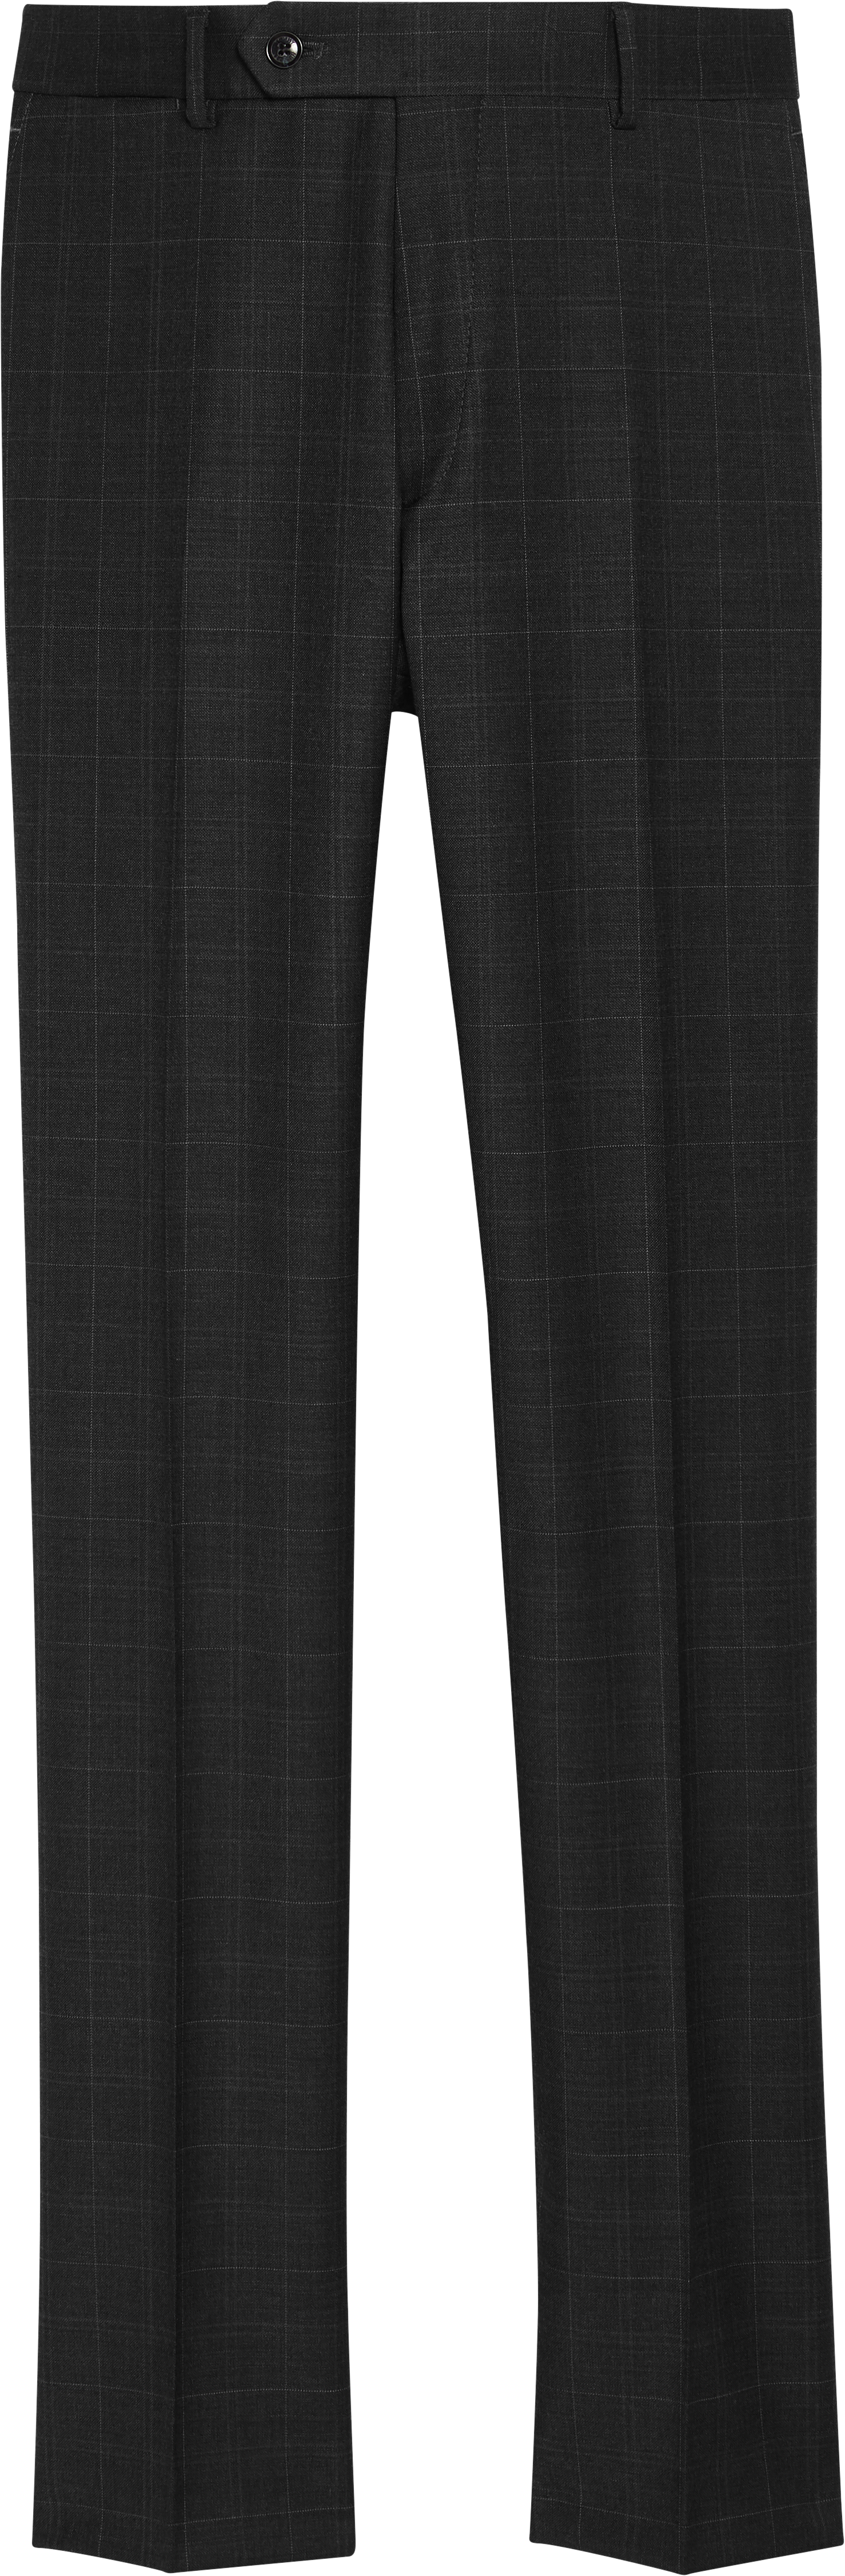 Tommy Hilfiger Modern Fit Suit Separate Pants | Pants| Men's Wearhouse